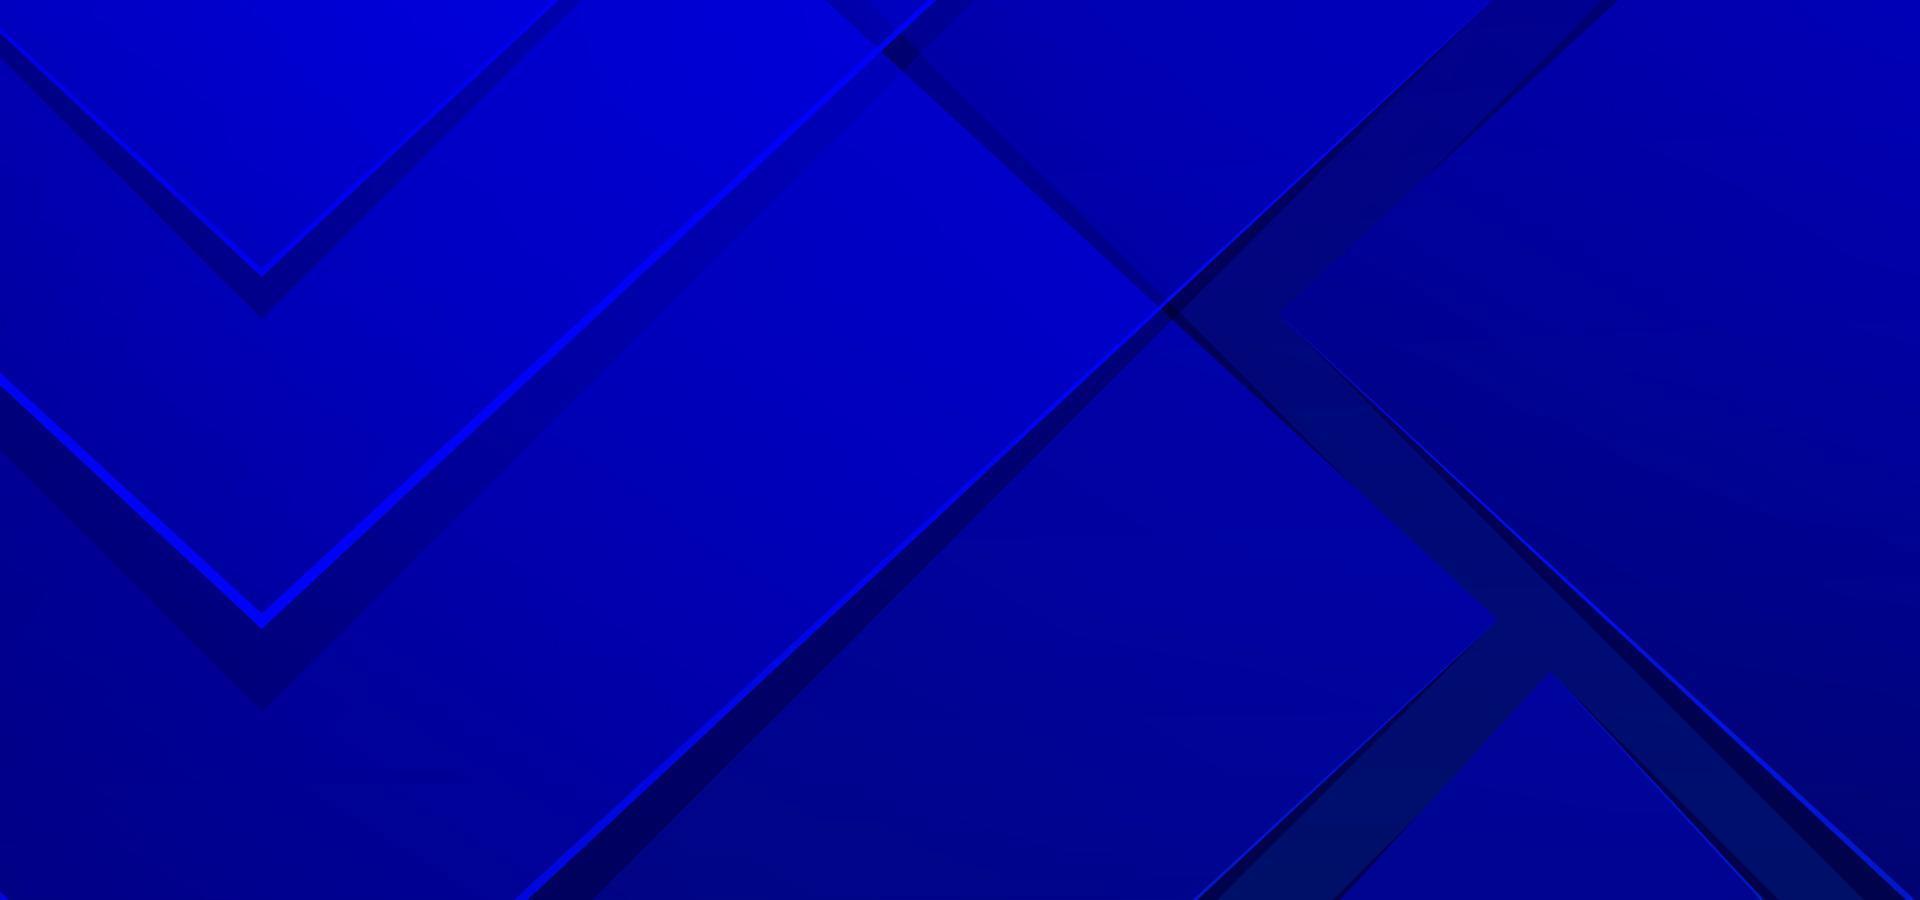 abstrakt blå bakgrund med trianglar vektor